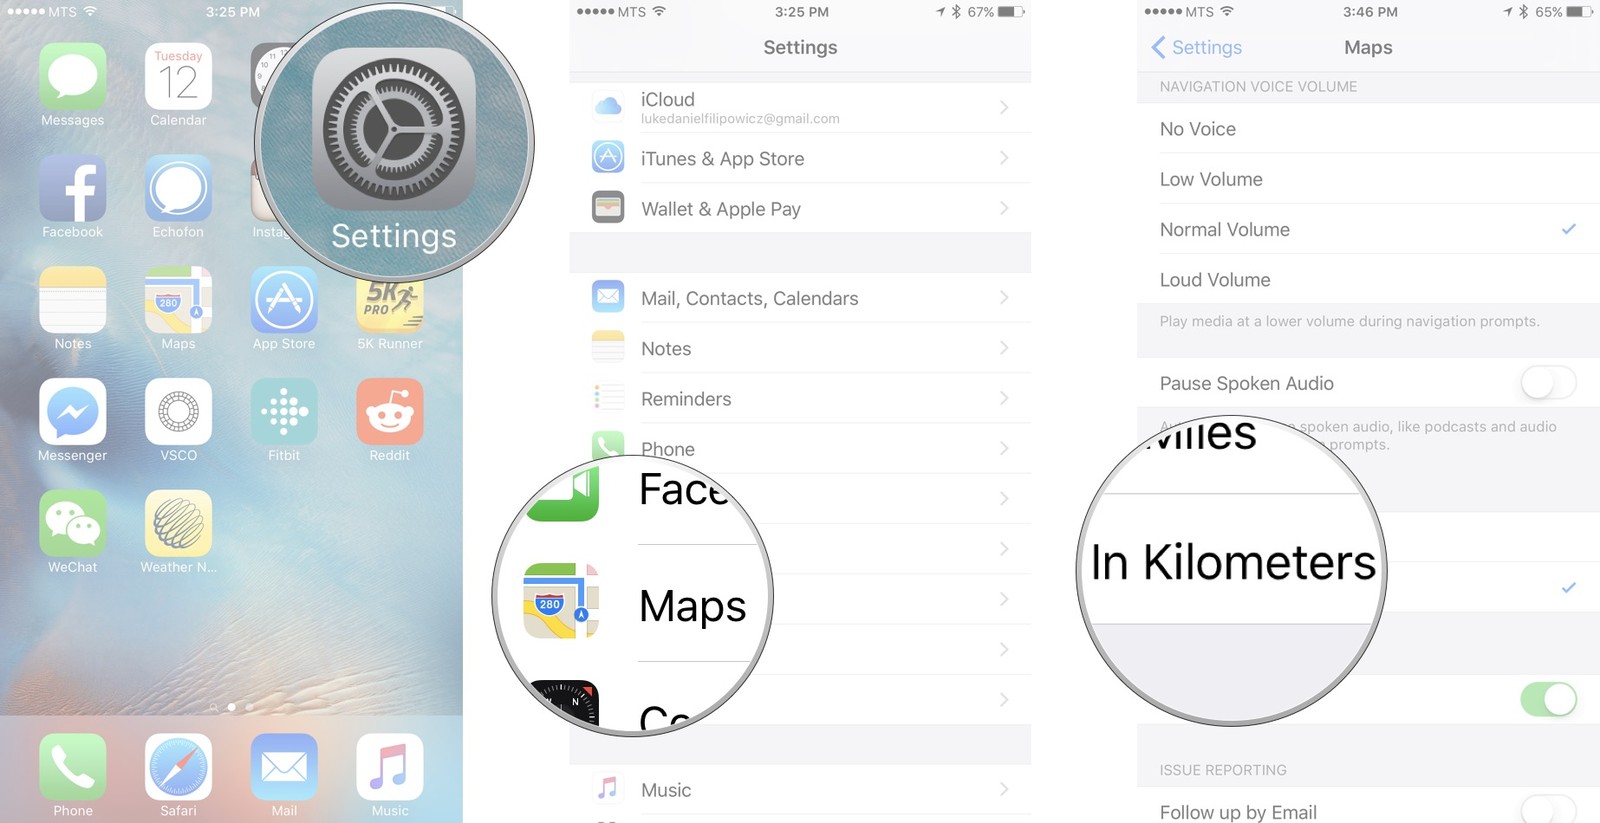 Как пользоваться Картами на iPhone и iPad - Изменить единицу измерения